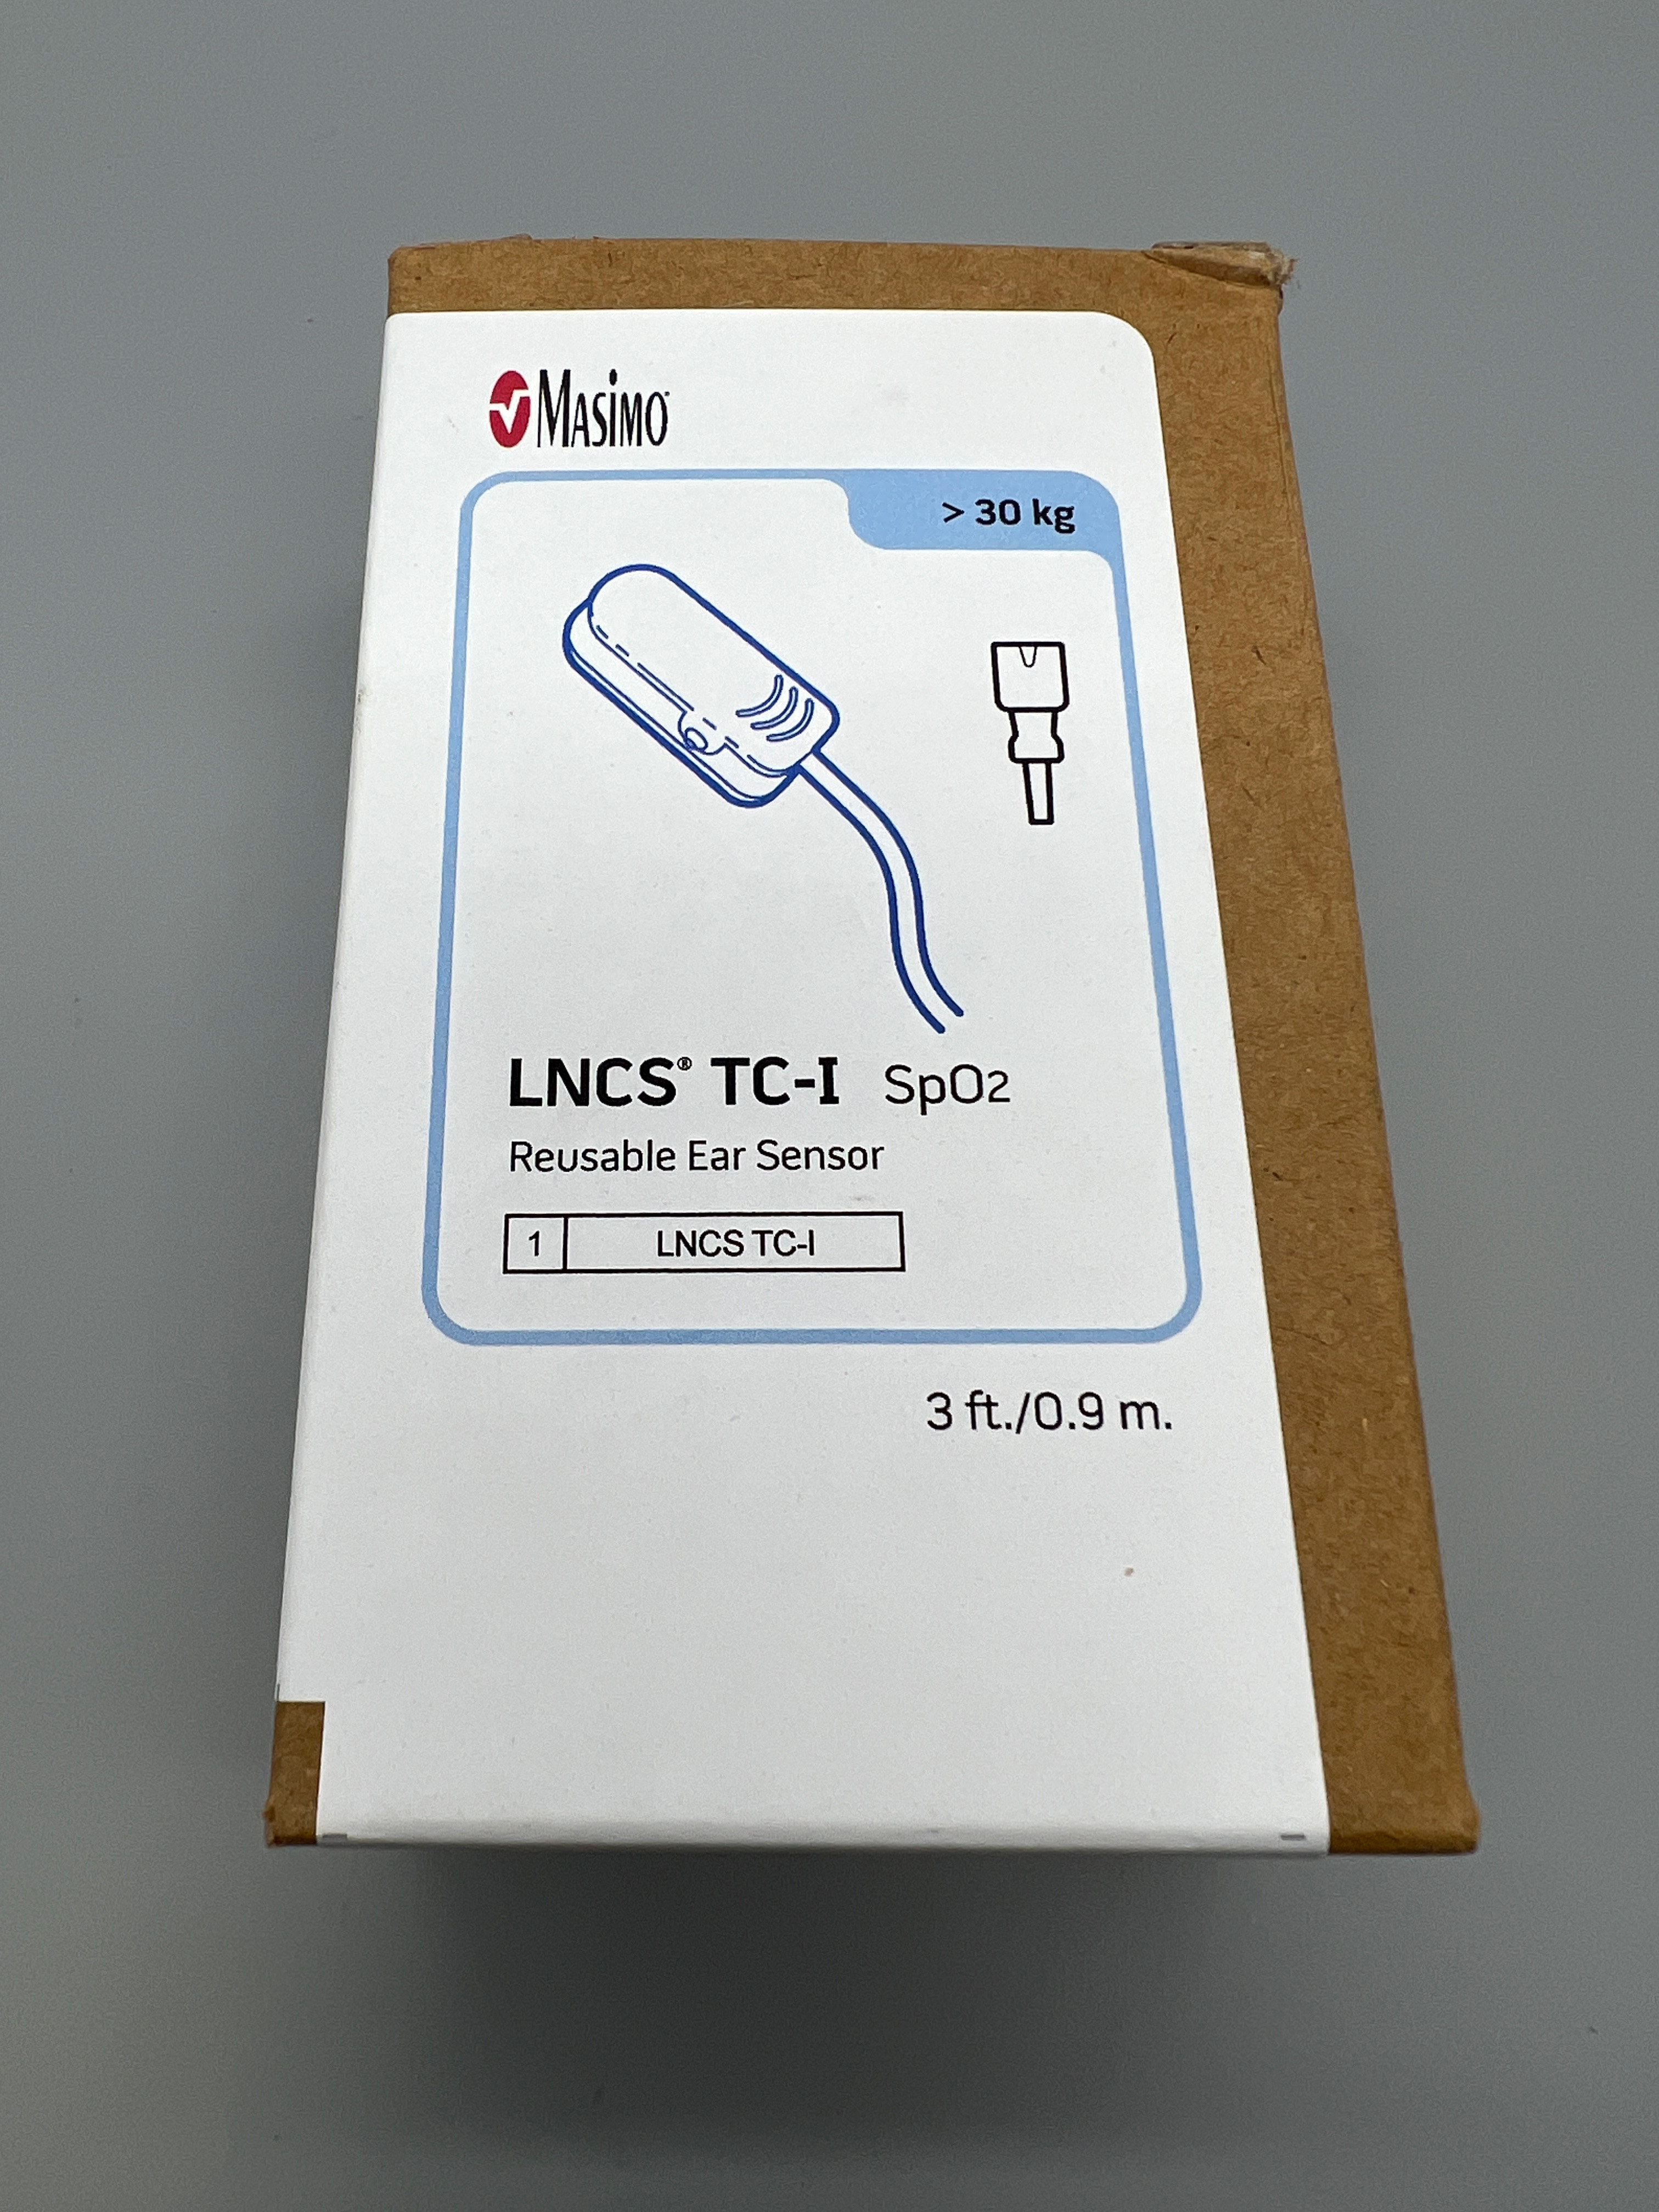 LNCS TC-I SP02 REUSABLE EAR SENSOR